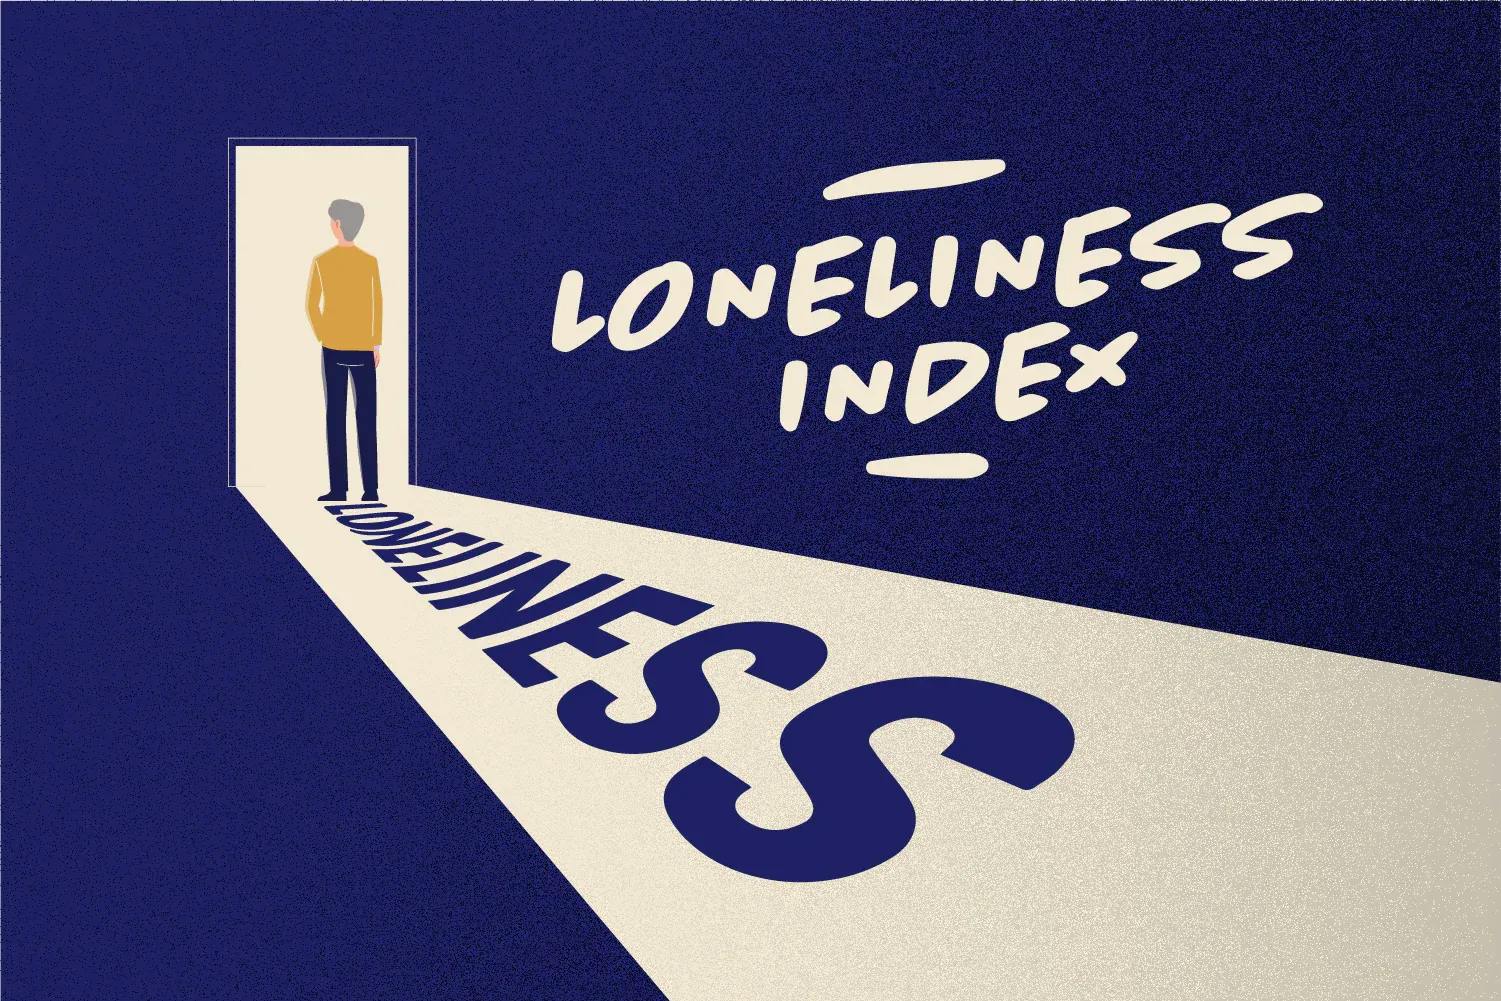 Loneliness Index